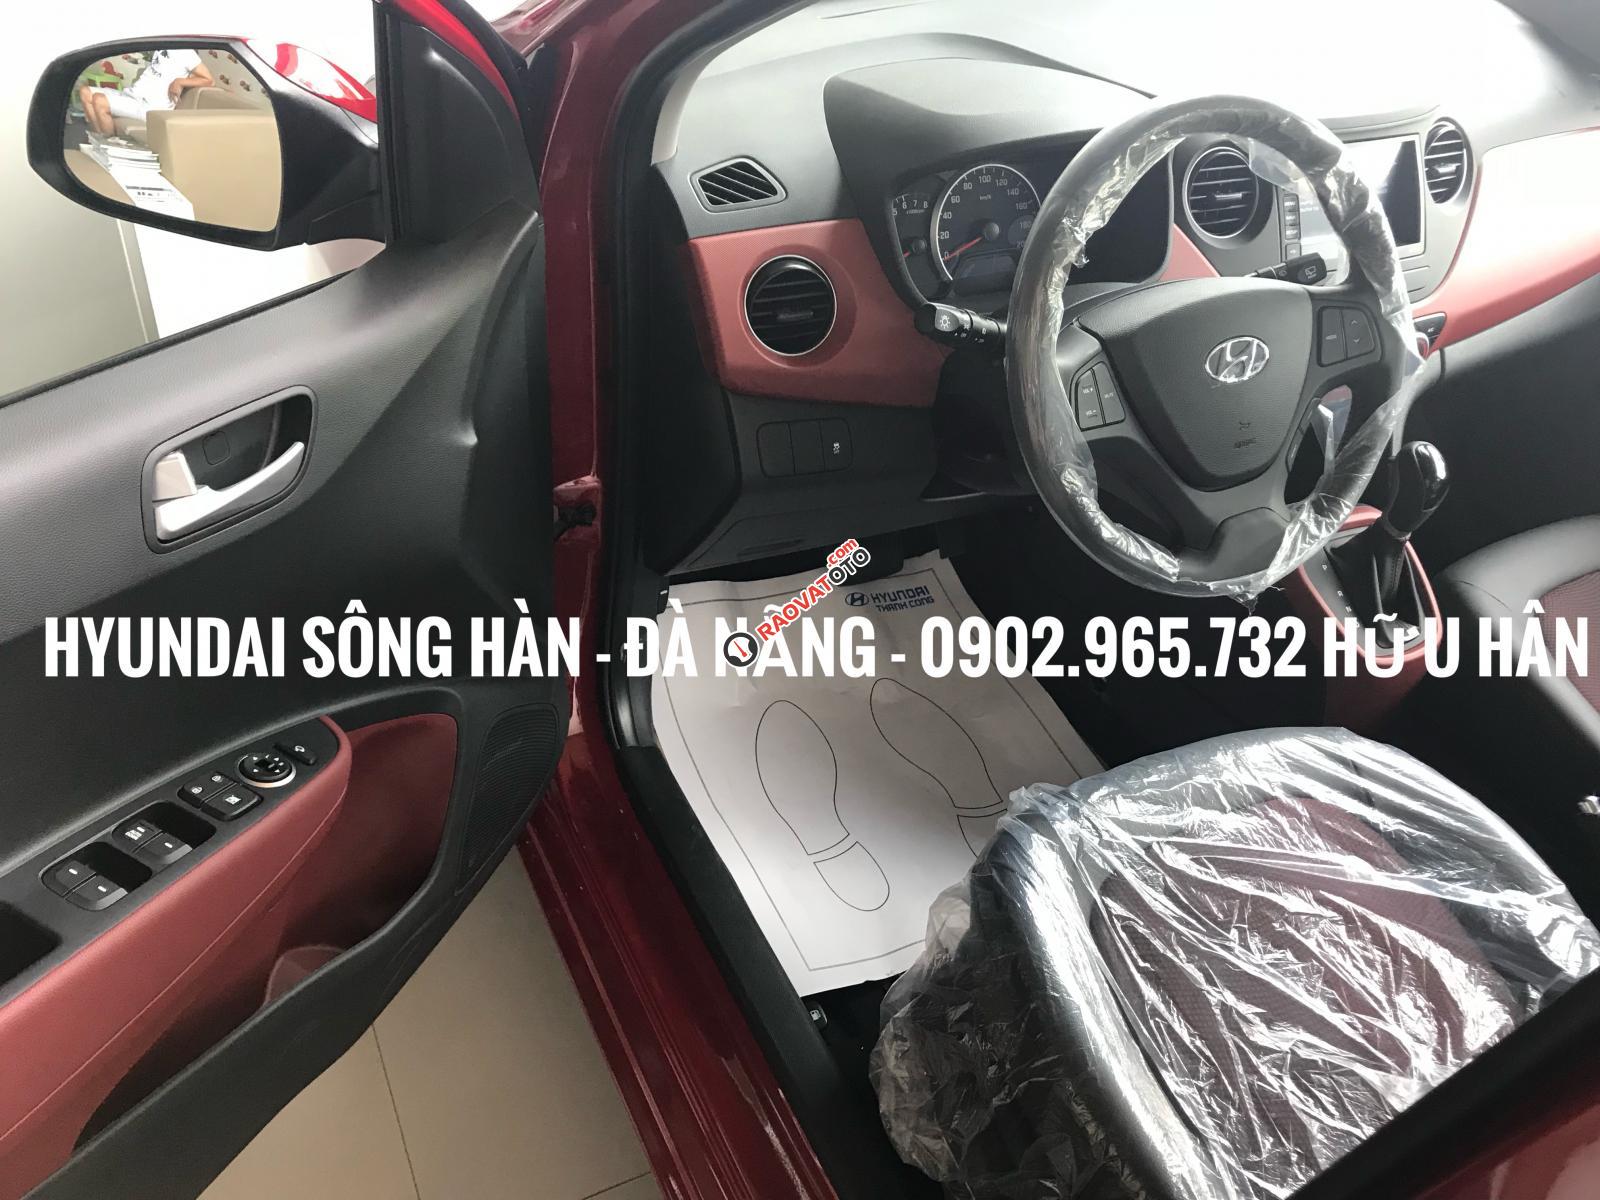 Bán xe Hyundai Grand i10 2019, màu đỏ, giá tốt nhất Đà Nẵng, chỉ cần 150 triệu để nhận xe, LH: 0902.965.732 Hữu Hân-1